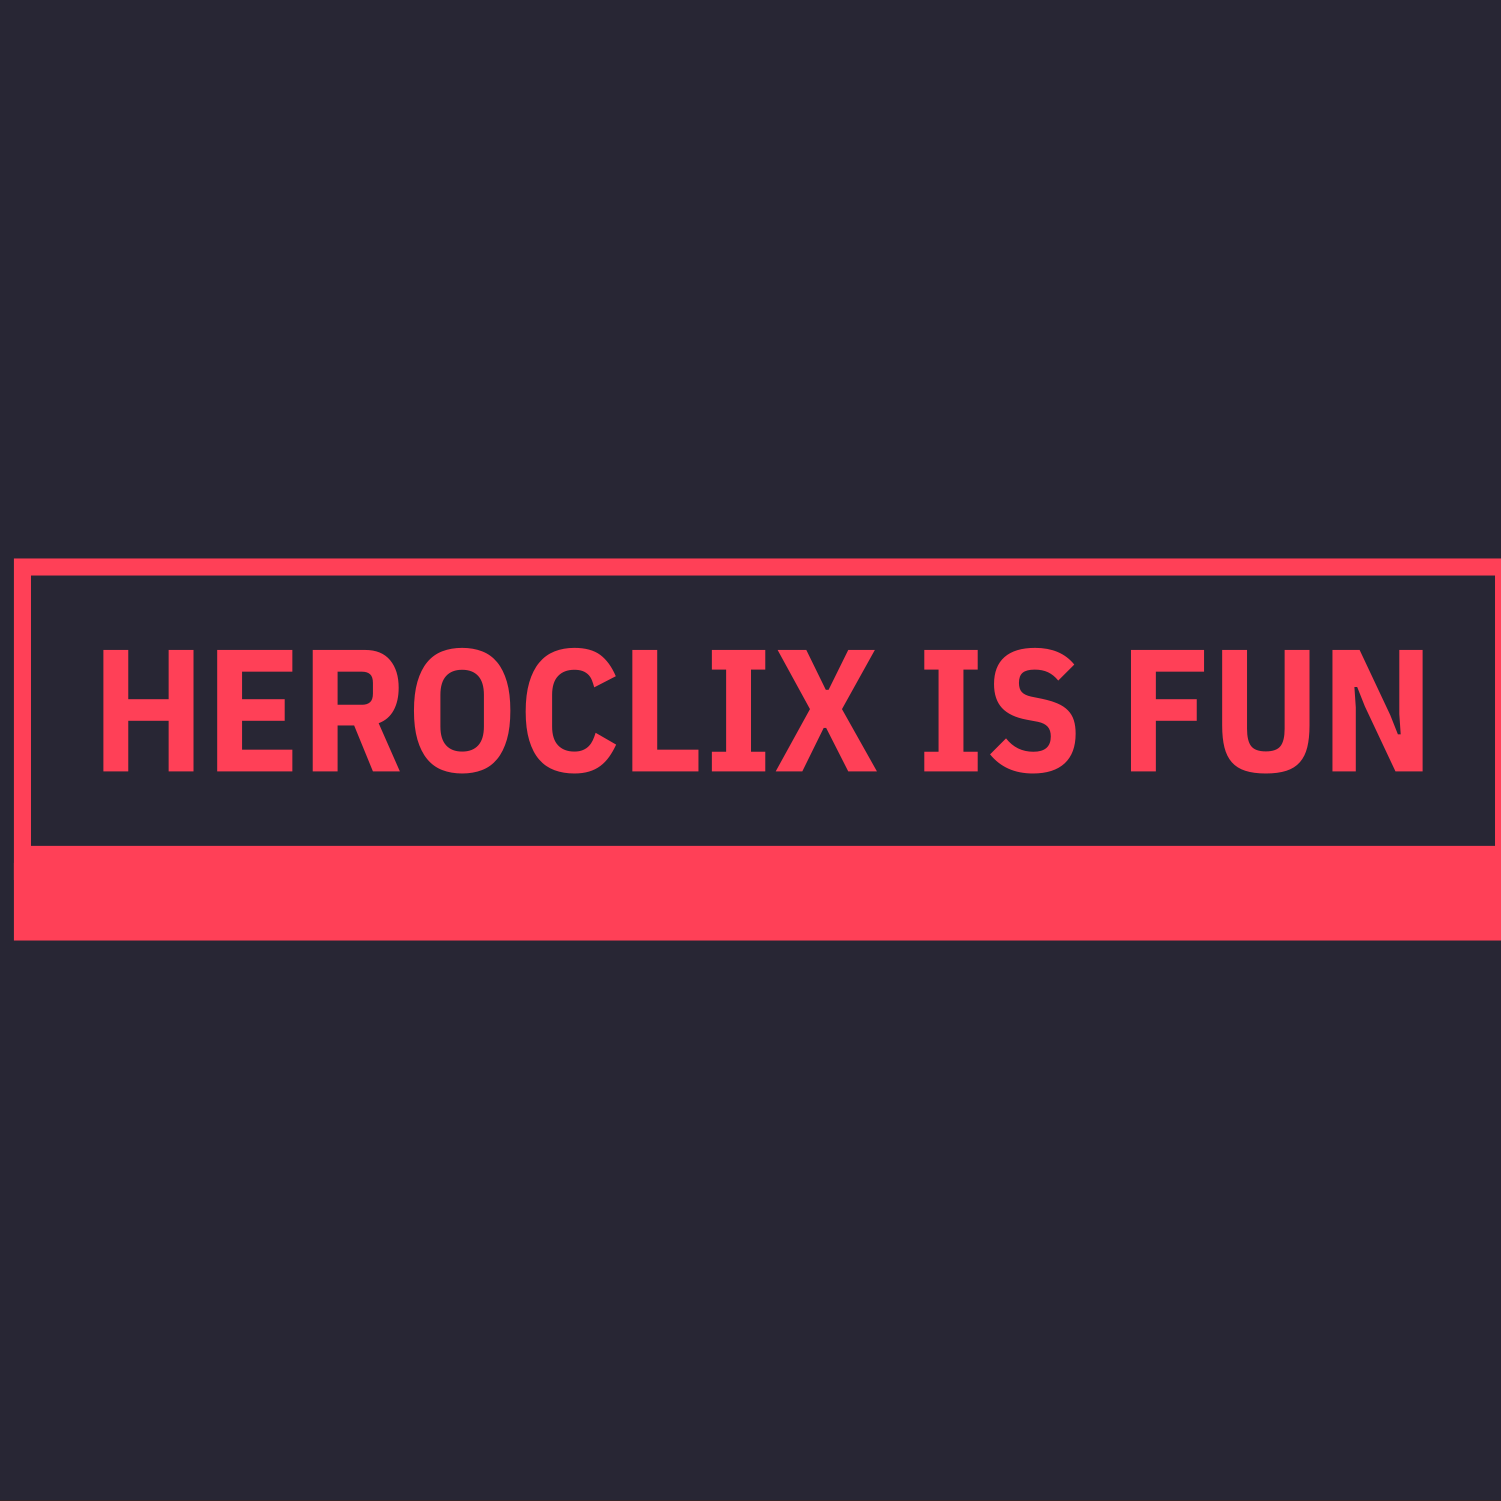 Heroclix is Fun